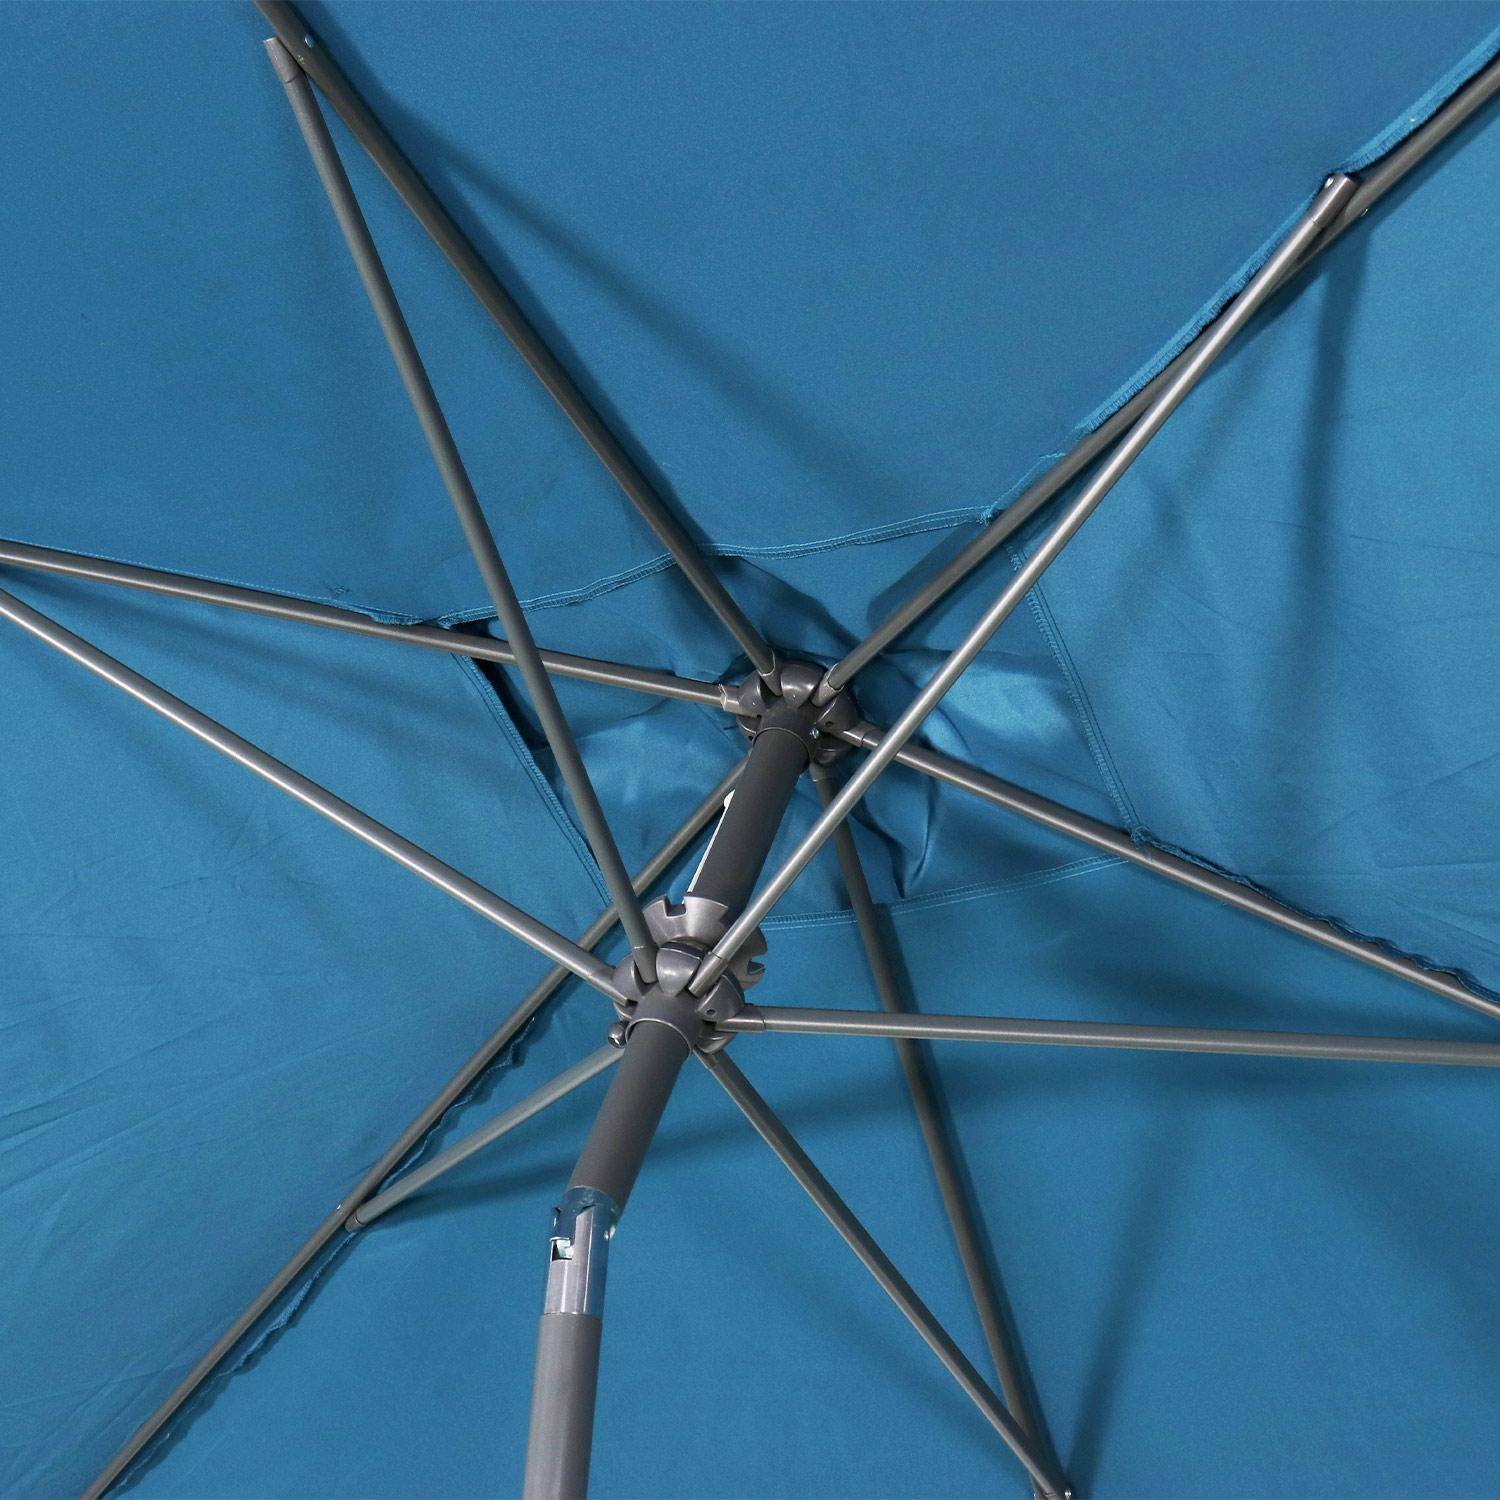 Parasol droit rectangulaire 2x3m - Touquet Bleu canard - mât central en aluminium orientable et manivelle d'ouverture Photo6